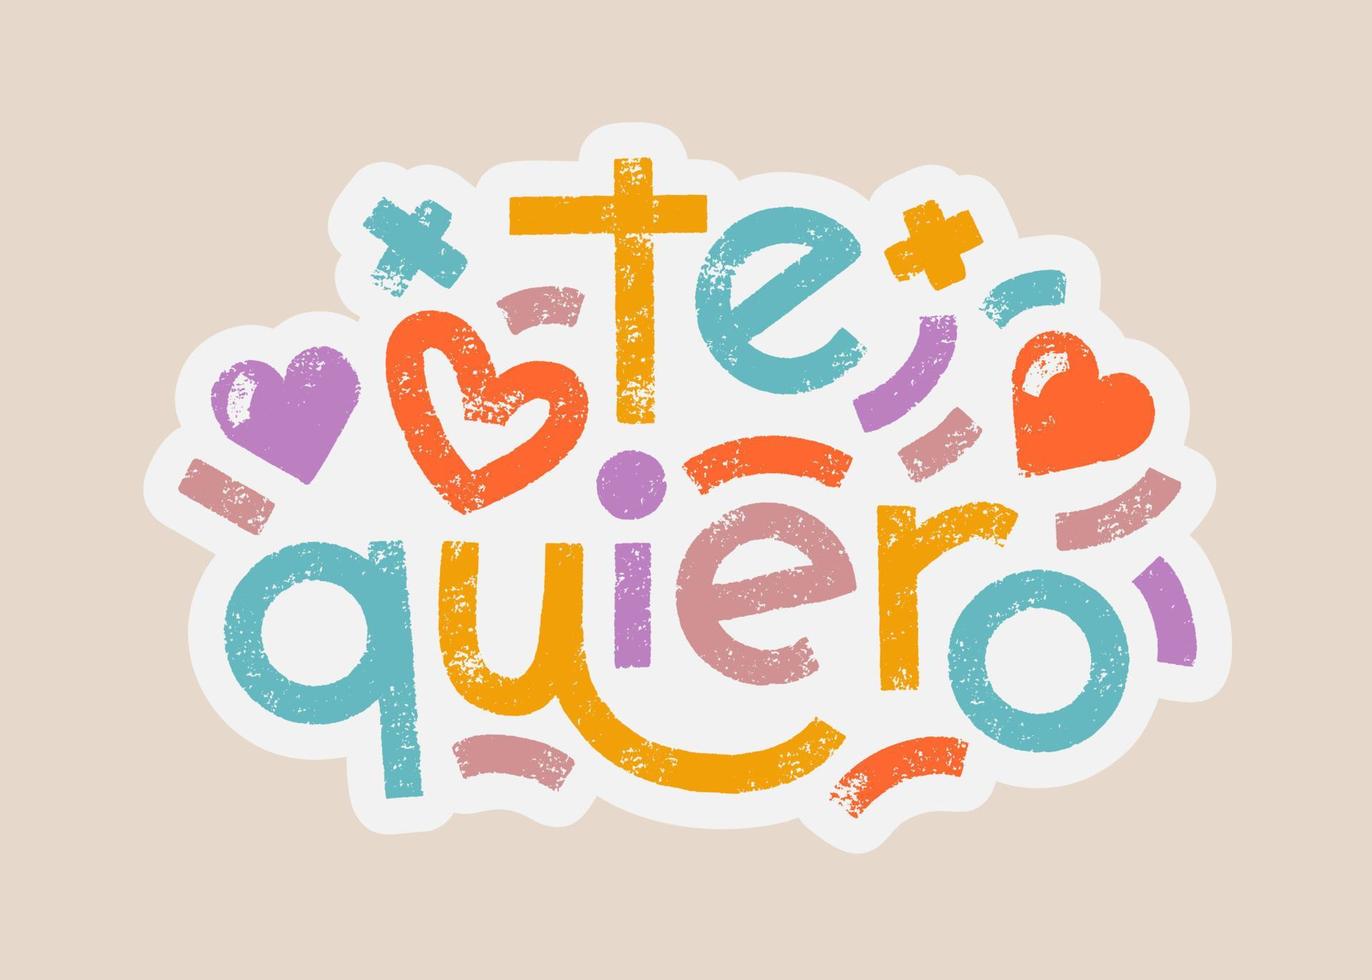 te quiero palavras em espanhol que se traduzem como eu te amo modelo de adesivo de cores pastel de letras em negrito. composição de tipografia moderna de vetor com efeito de textura. rótulo romântico de slogan comum.